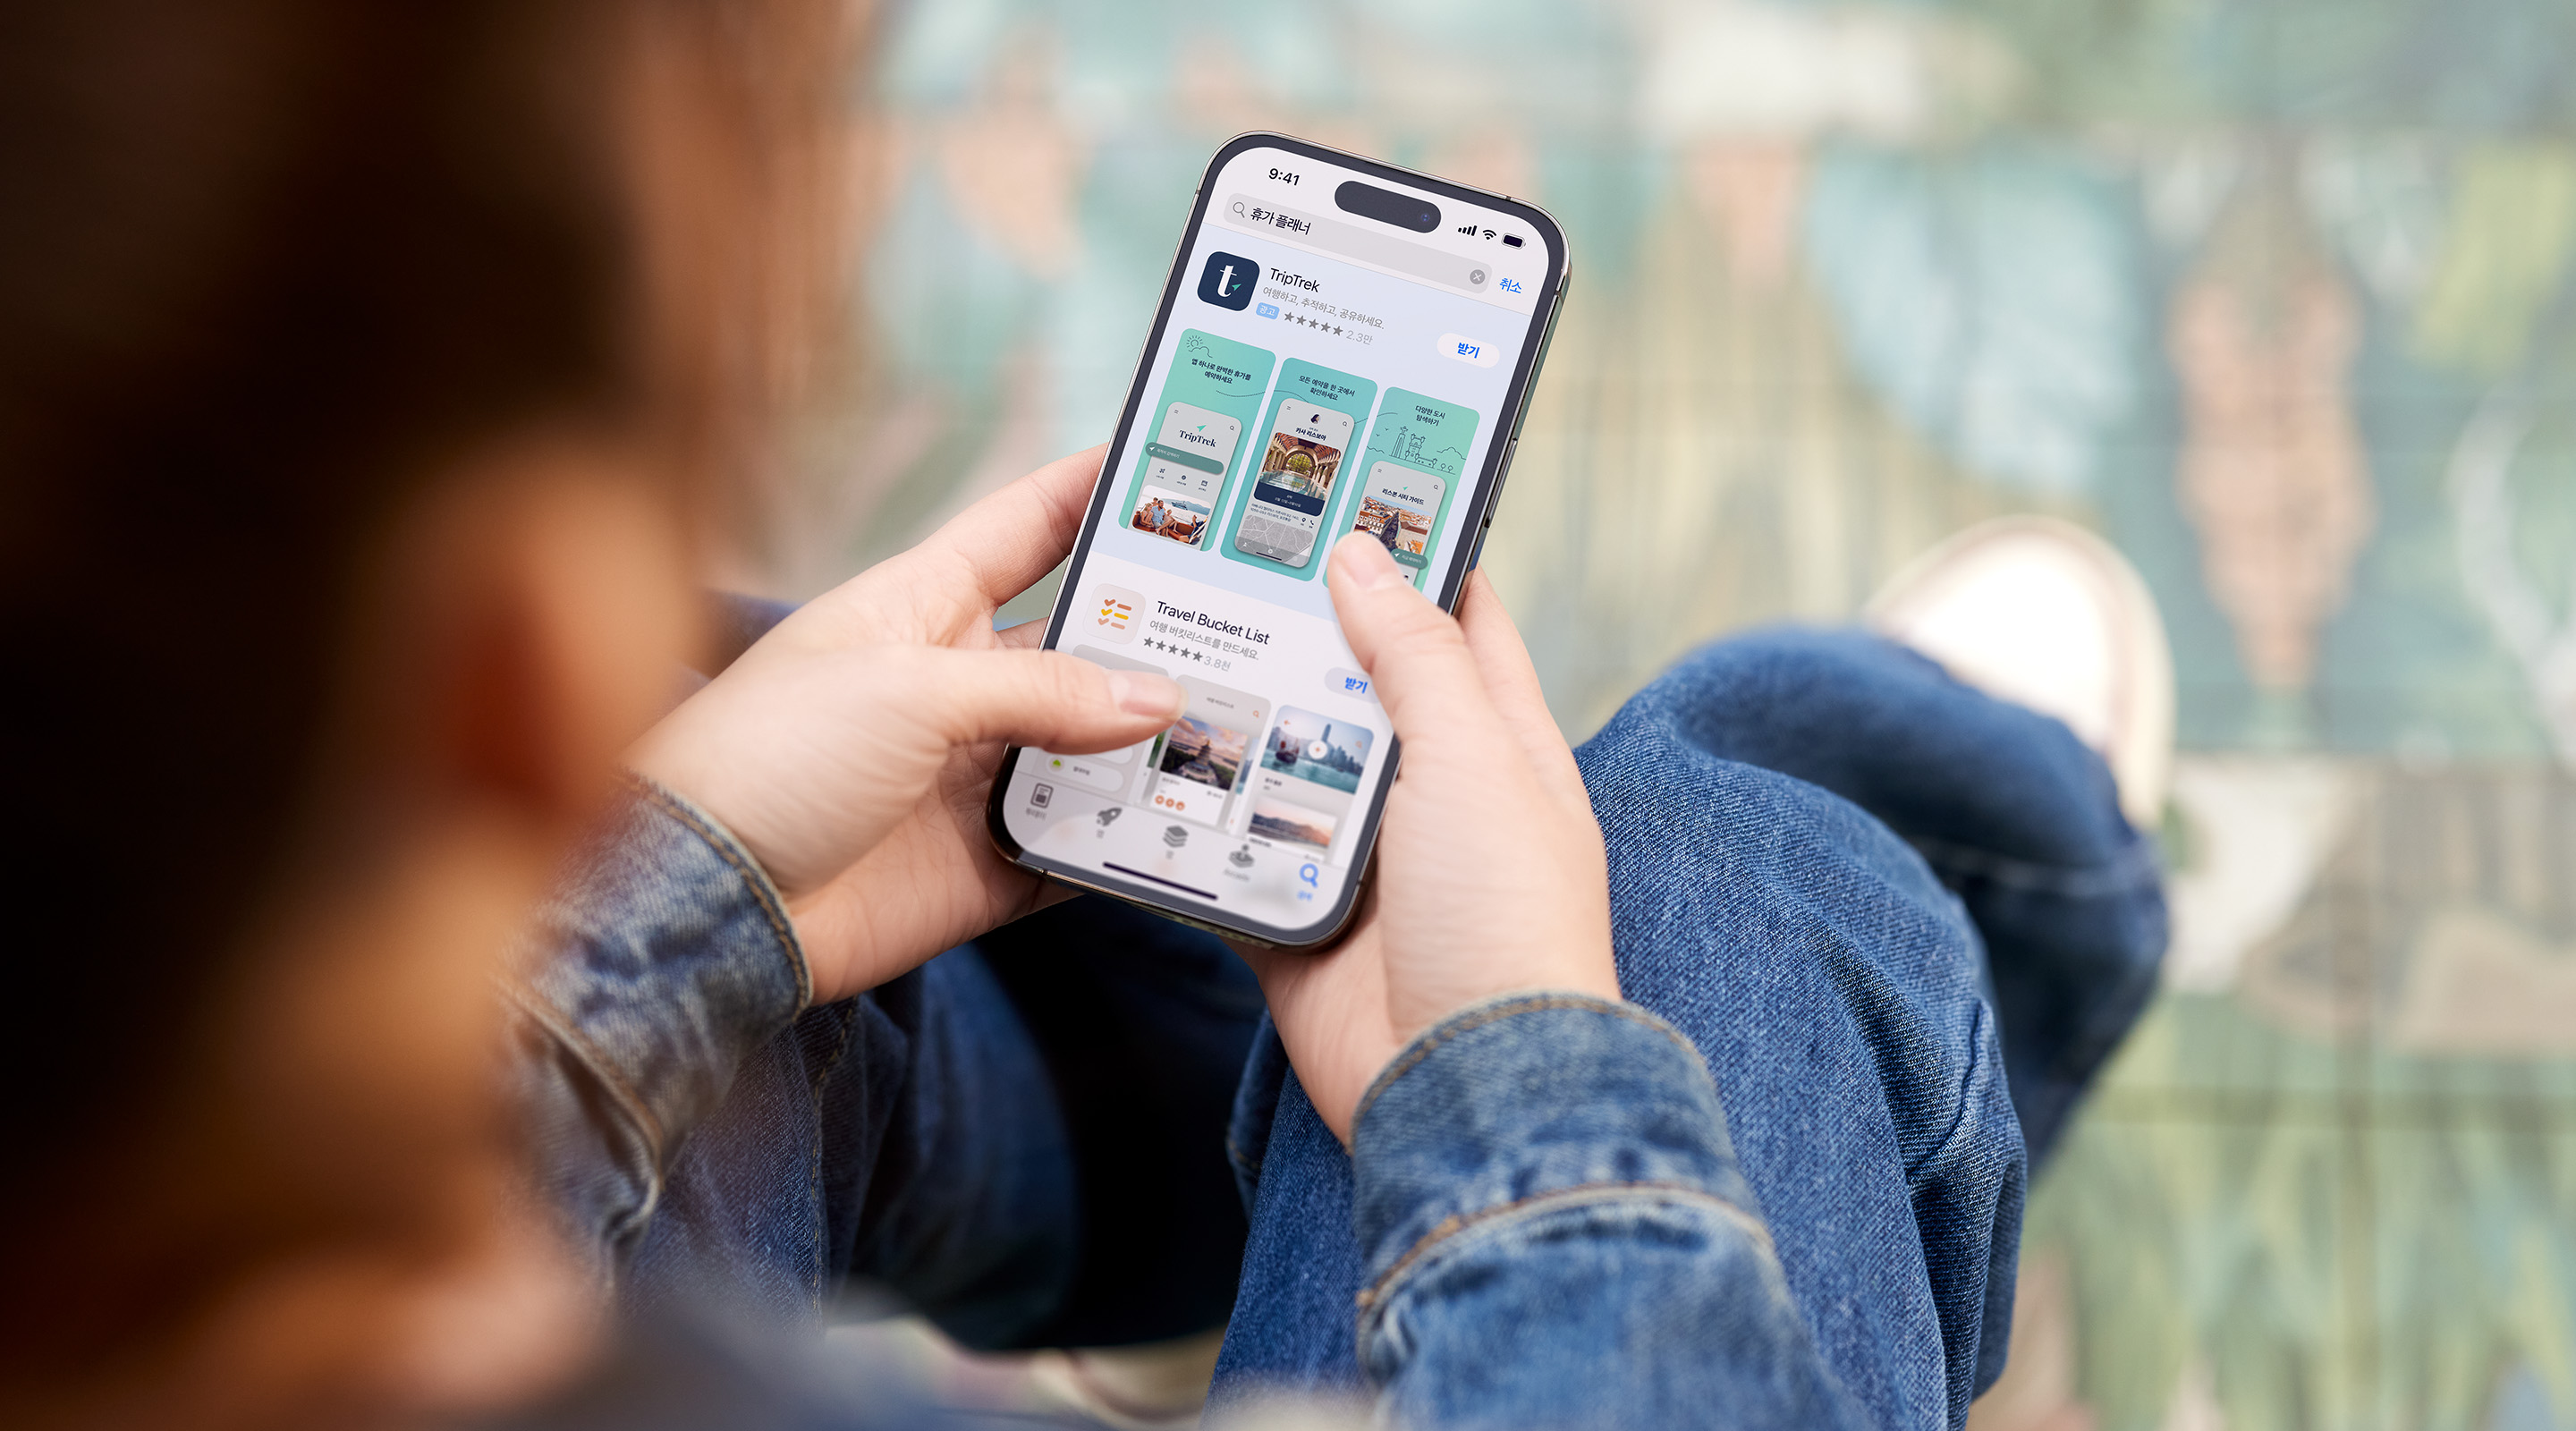 양손으로 iPhone을 들고 있습니다. App Store에 예제 앱 TripTrek에 대한 검색 결과 광고가 표시되어 있고, 검색 상자에 검색어 '휴가 플래너'가 입력되어 있습니다.